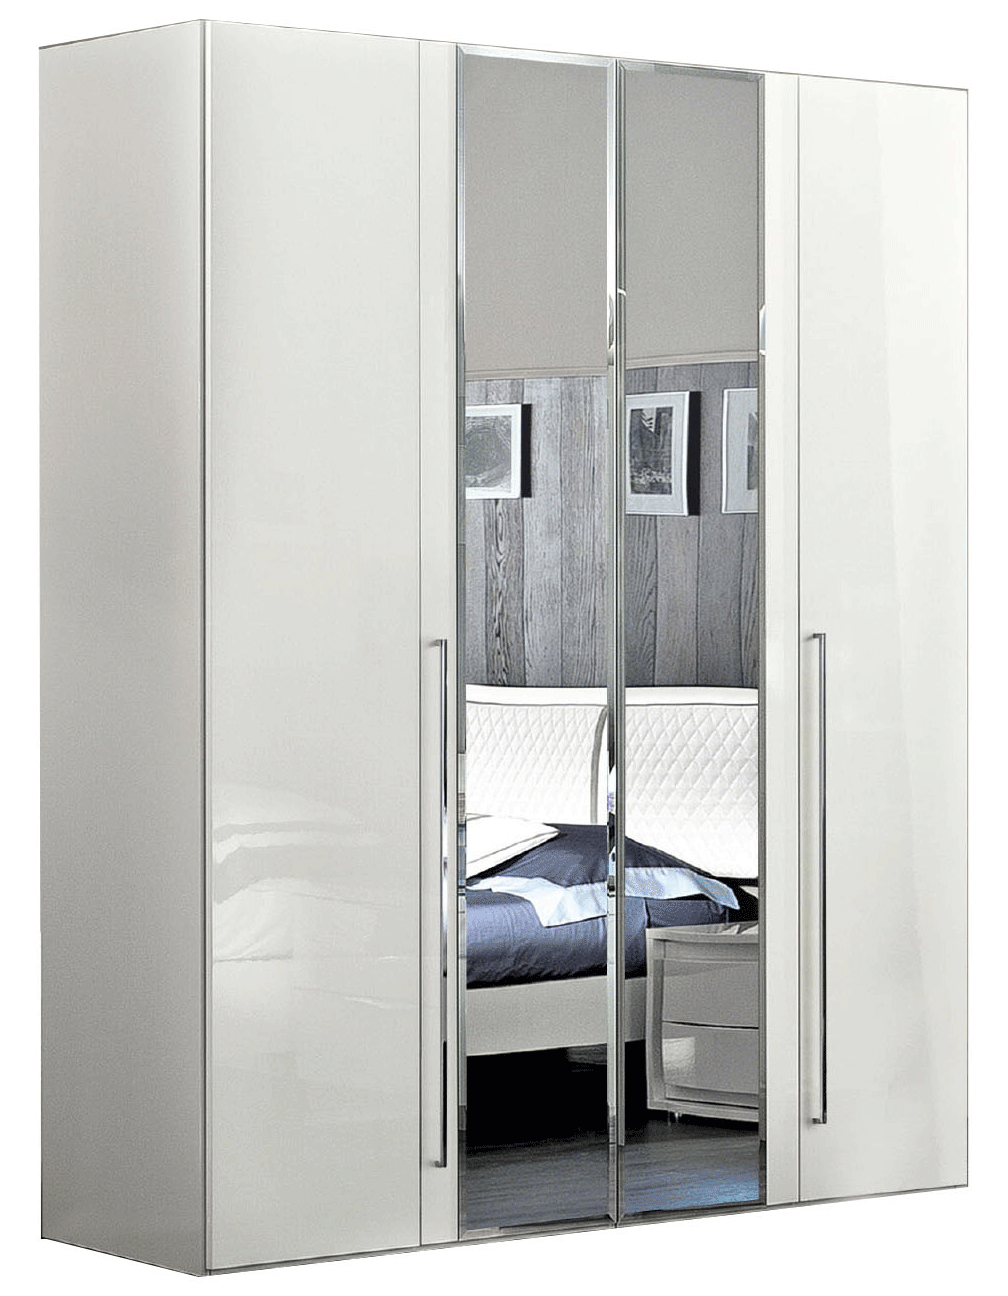 Brands Camel Modum Collection, Italy Dama Bianca 4 Door Glass Doors Wardrobe White